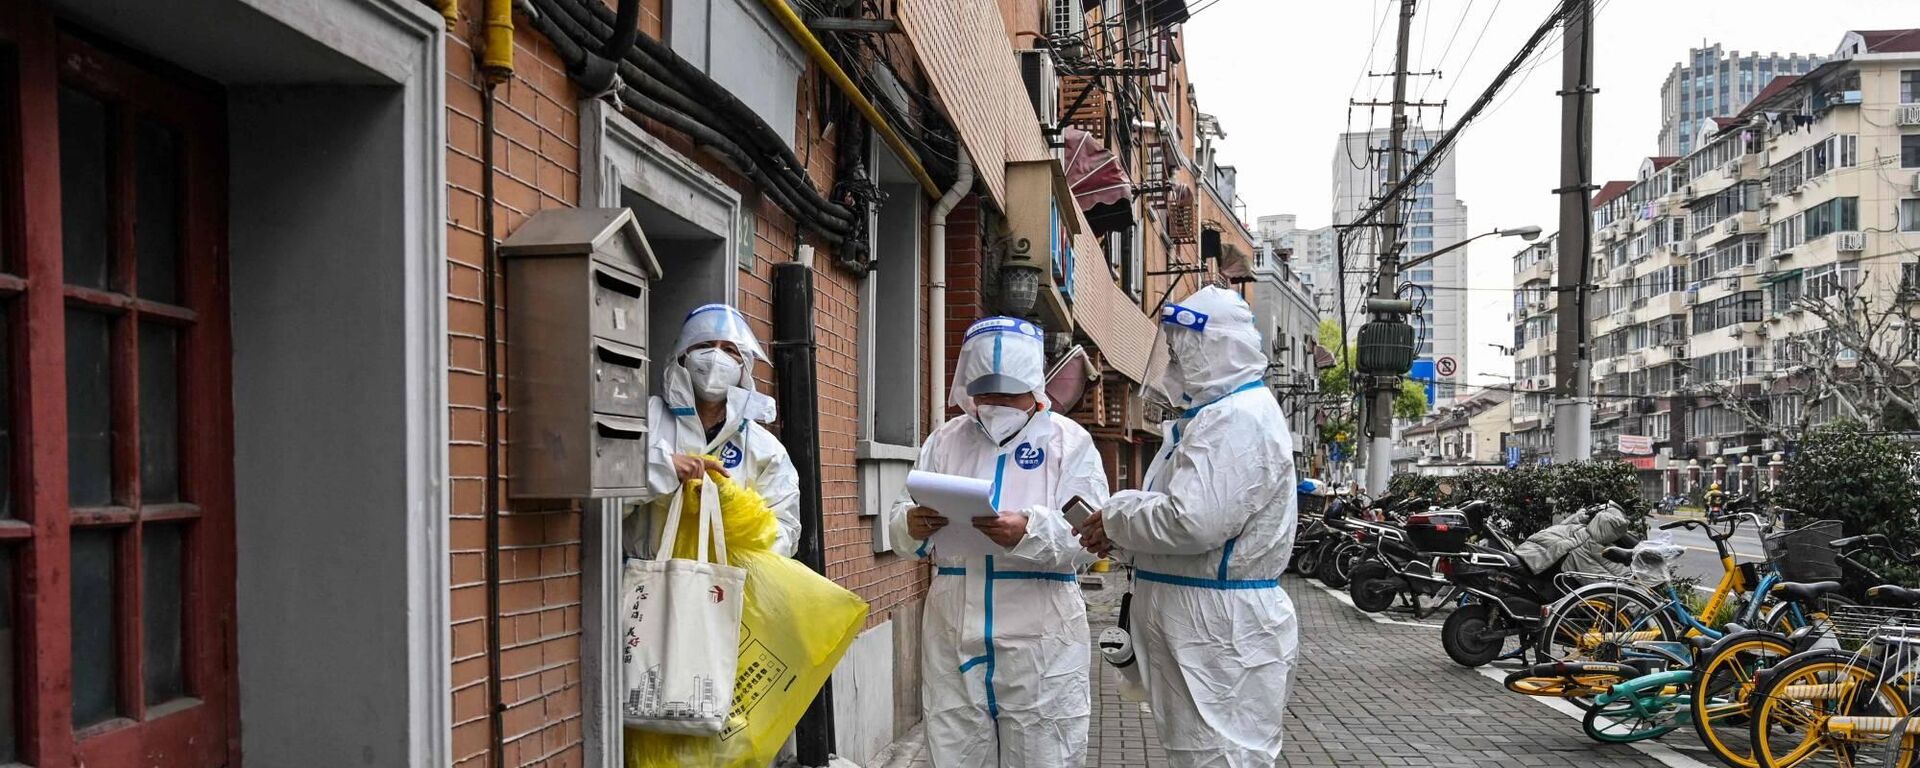 Çin'de Omicron varyantının tetiklediği koronavirüs salgınının kontrol altına alınmaya çalışıldığı Şanghay'daki karantina bölgeleri dışında 'sıfır Kovid' hedefine ulaşıldığı bildirildi. - Sputnik Türkiye, 1920, 05.01.2023